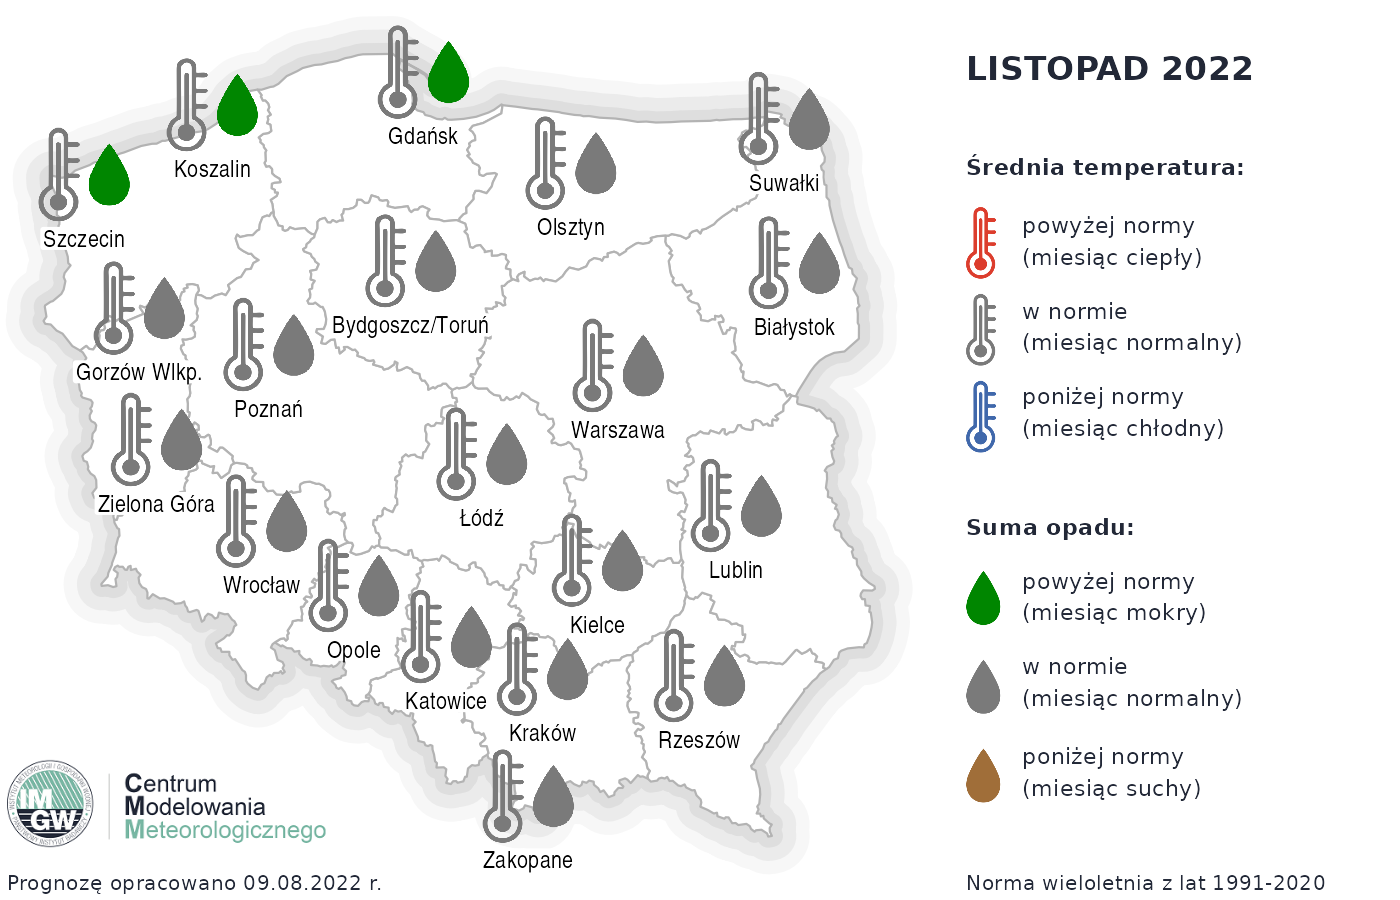 Prognoza średniej miesięcznej temperatury powietrza i miesięcznej sumy opadów atmosferycznych na listopad 2022 r. dla wybranych miast w Polsce